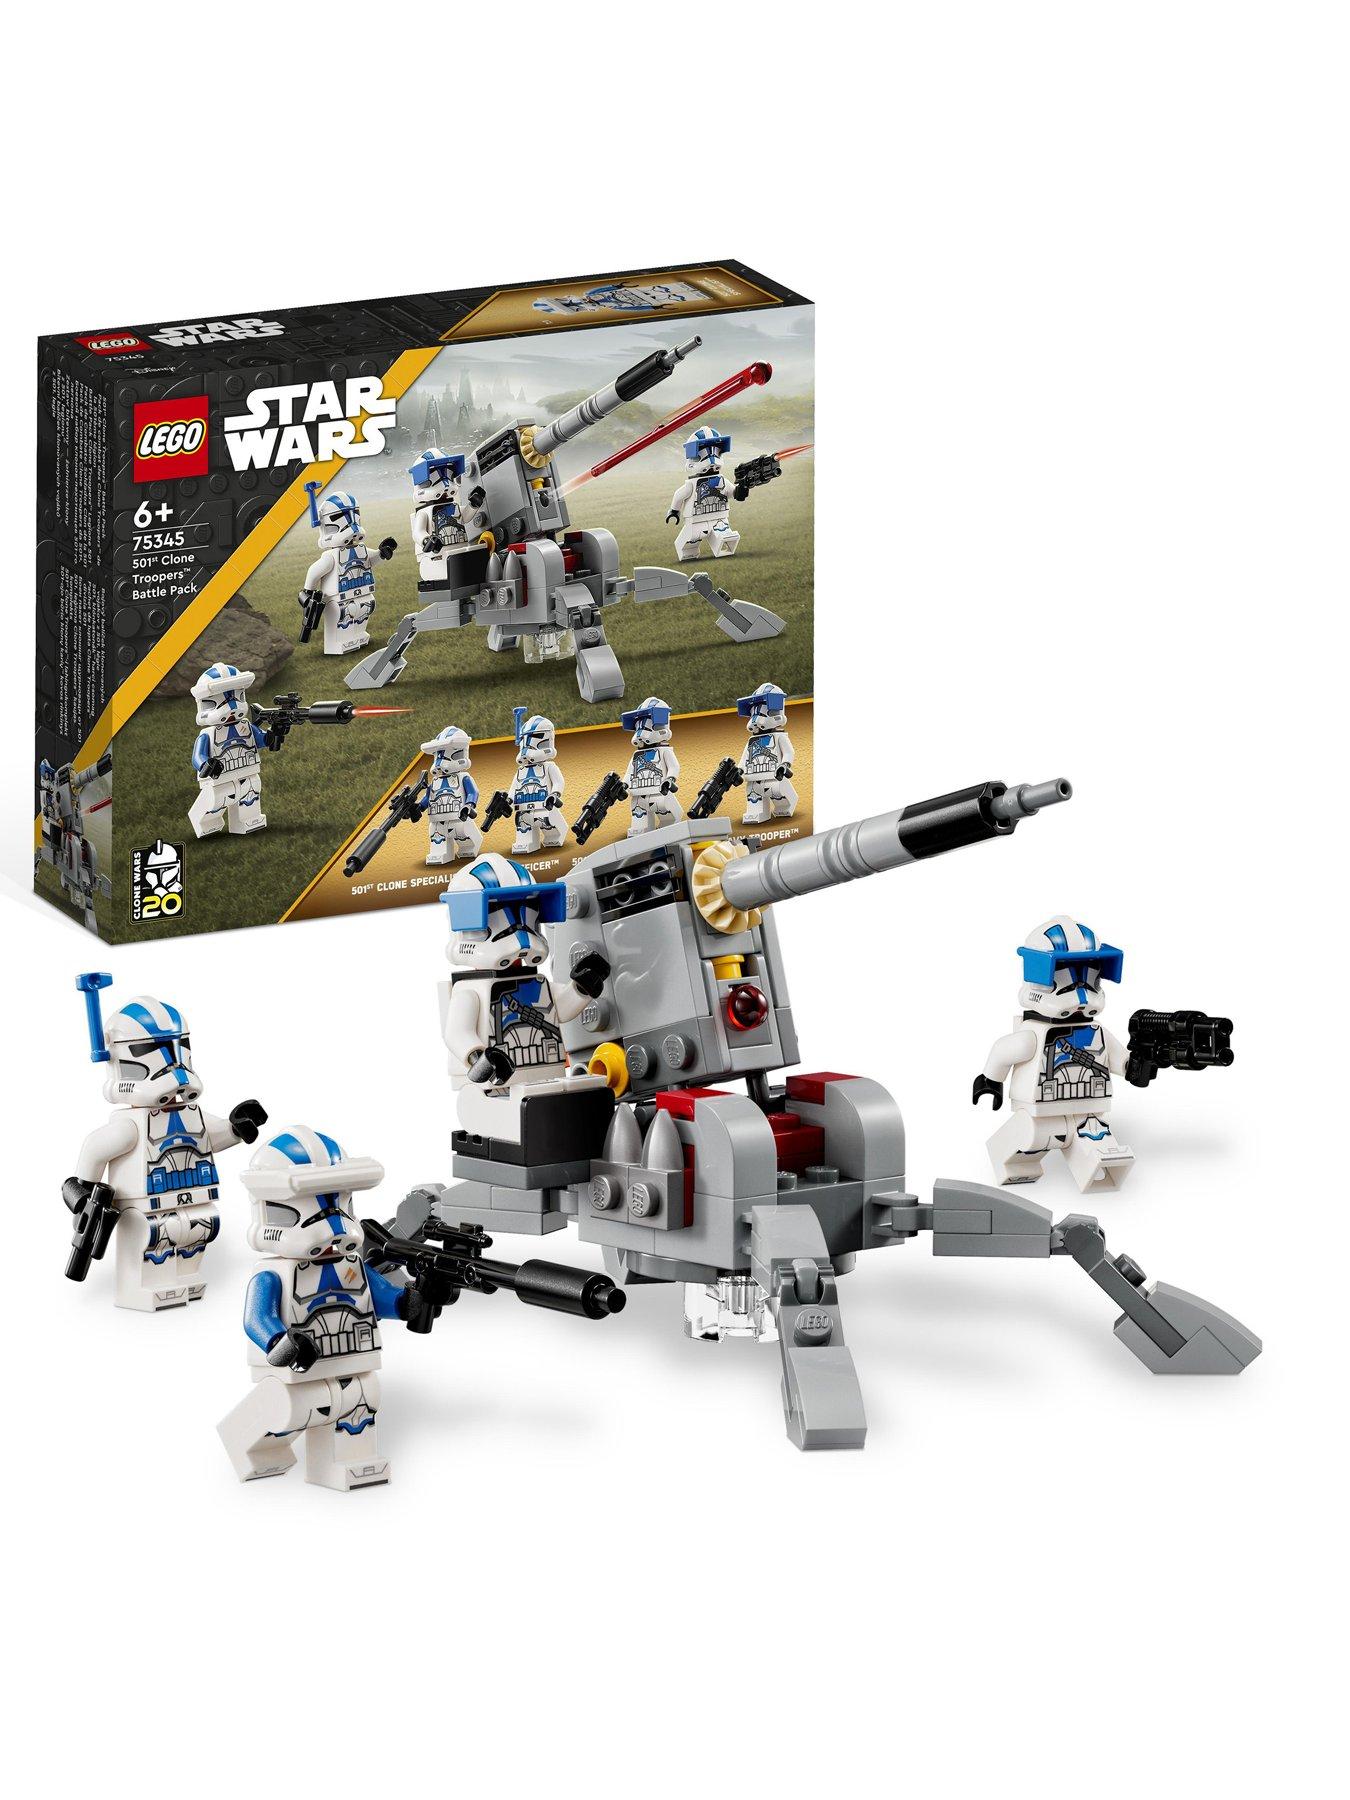 お得に買える通販 LEGO Star Wars The Justifier 75323， Buildable Toy Starship with  Cad Bane Minifigure and Todo 360 Droid Figure， Bad Batch Set， Gifts for  Kids， Boys